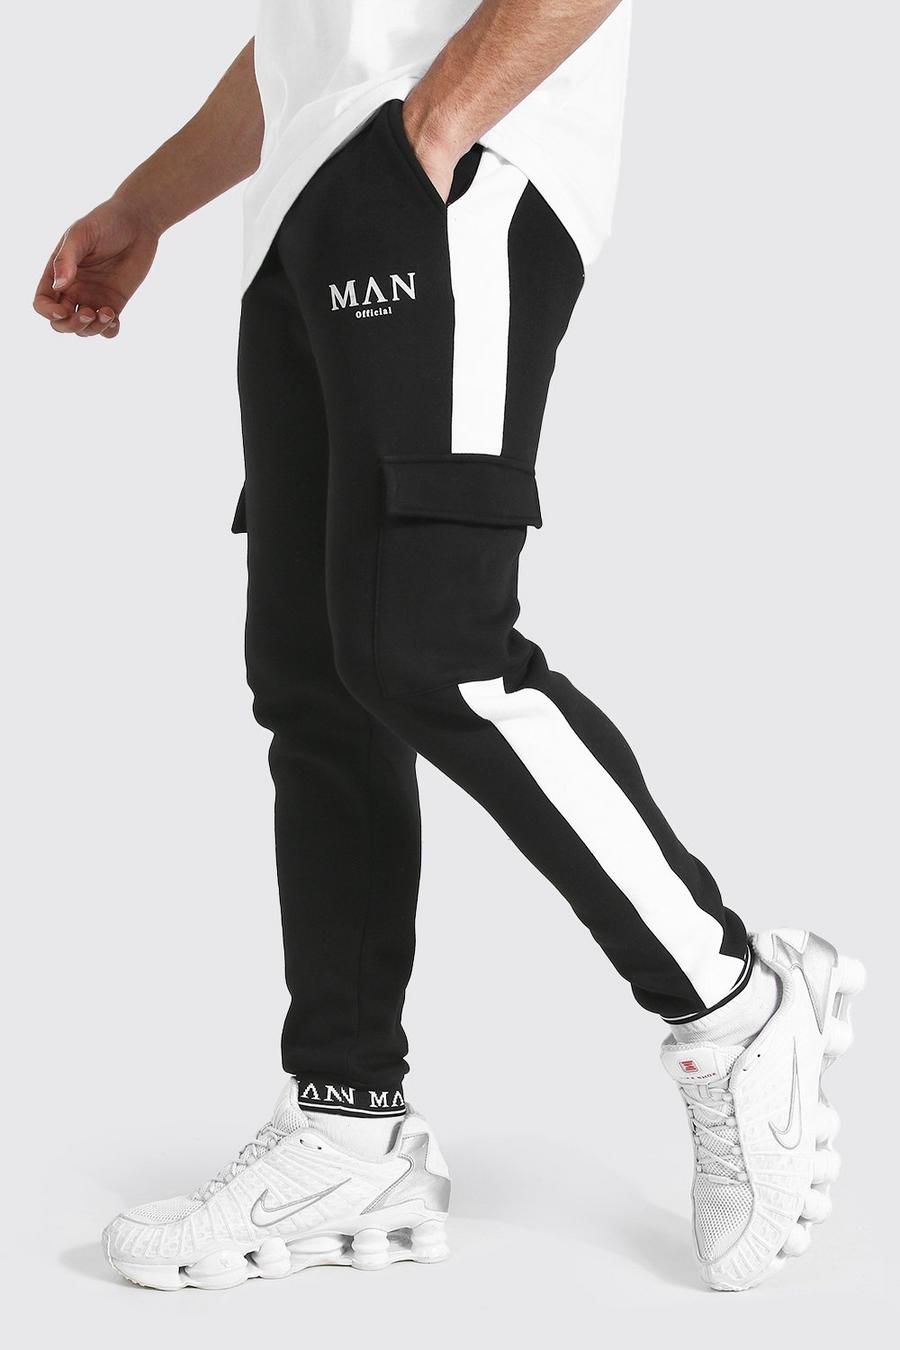 שחור מכנסי ריצה דגמ"ח בגזרת סקיני עם רקמת Man בחפתים image number 1